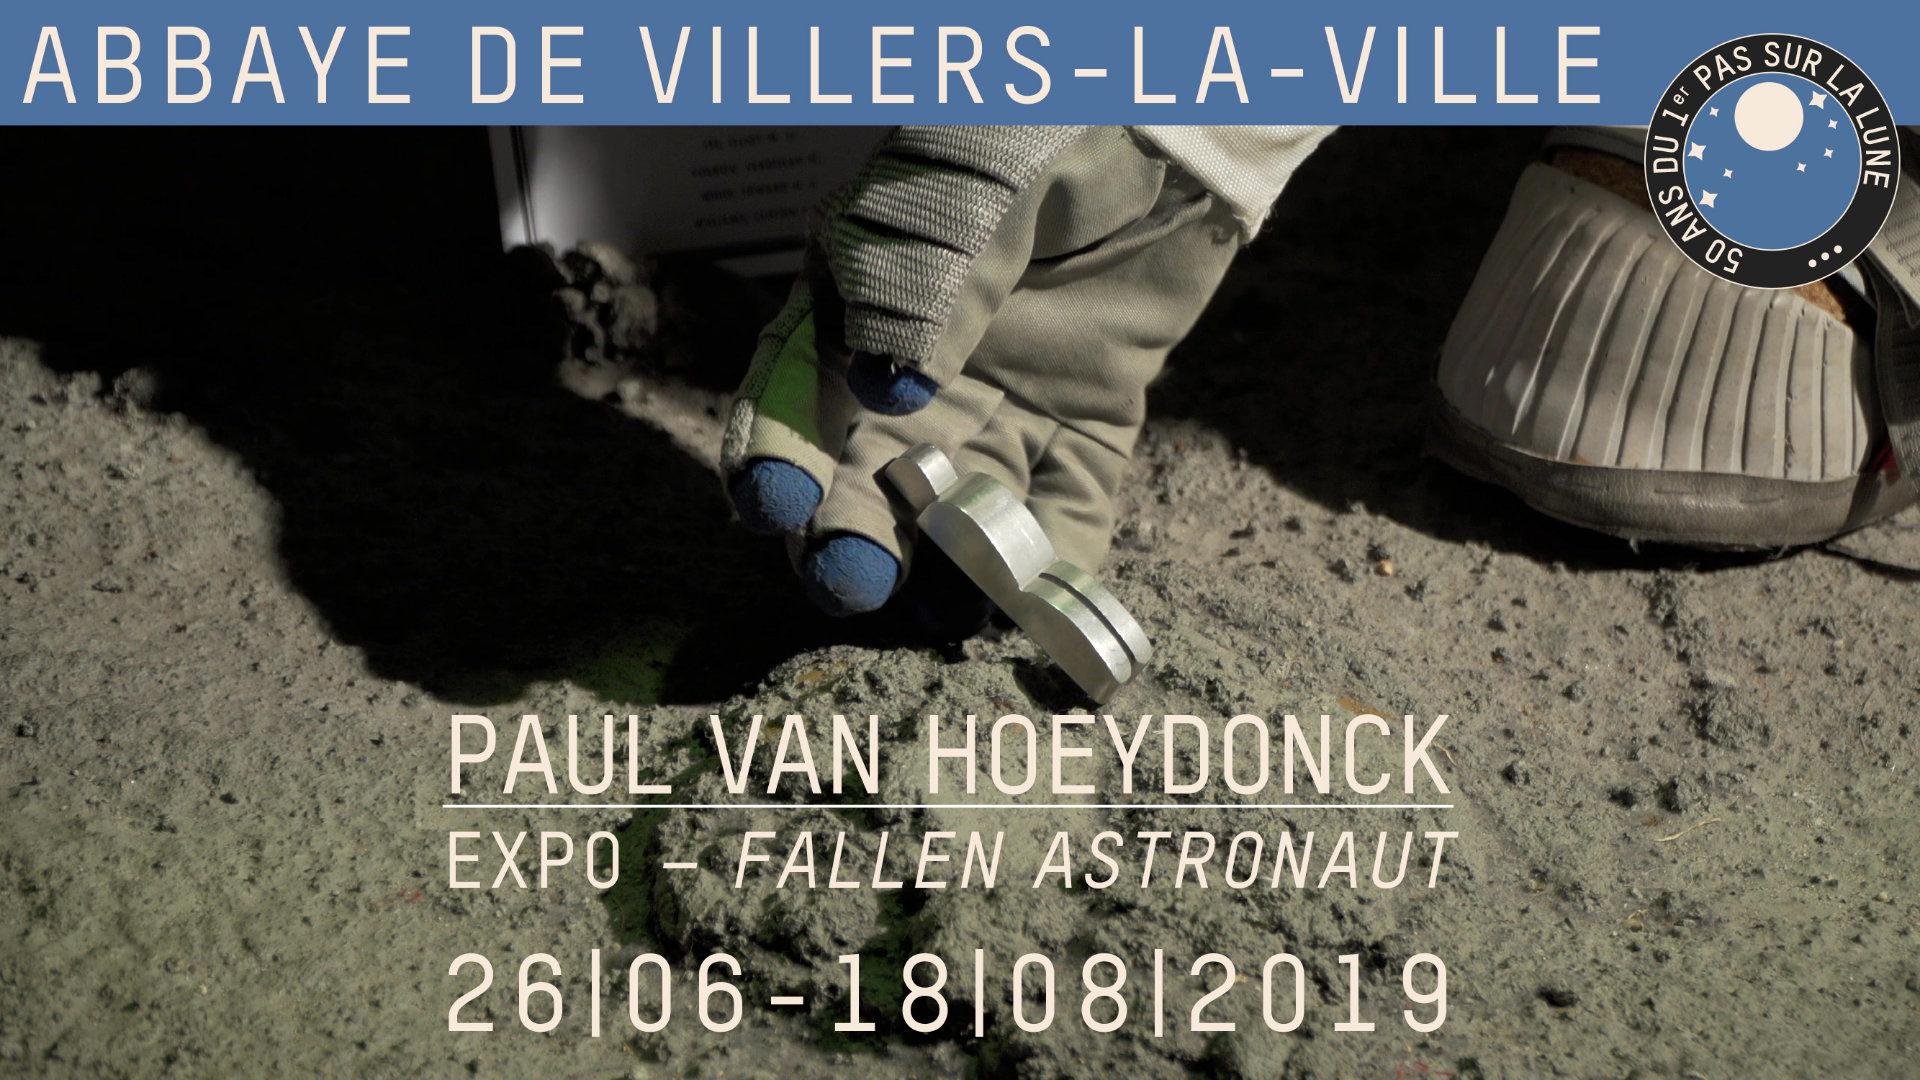 Expo Fallen Astronaut